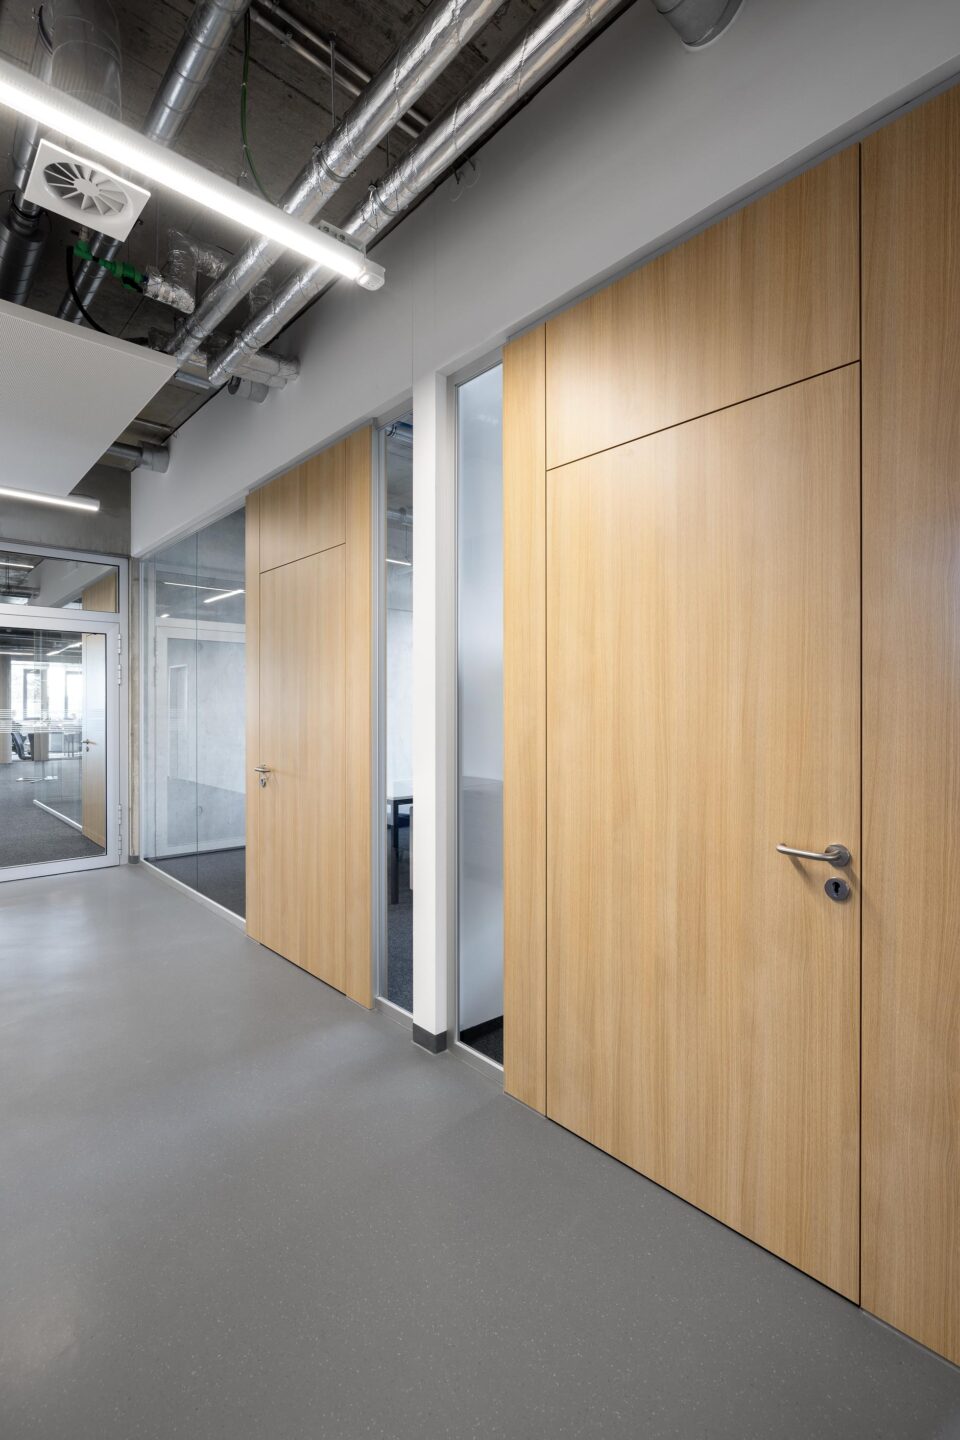 Erhardt + Leimer electrical installations | wooden doors in the hallway